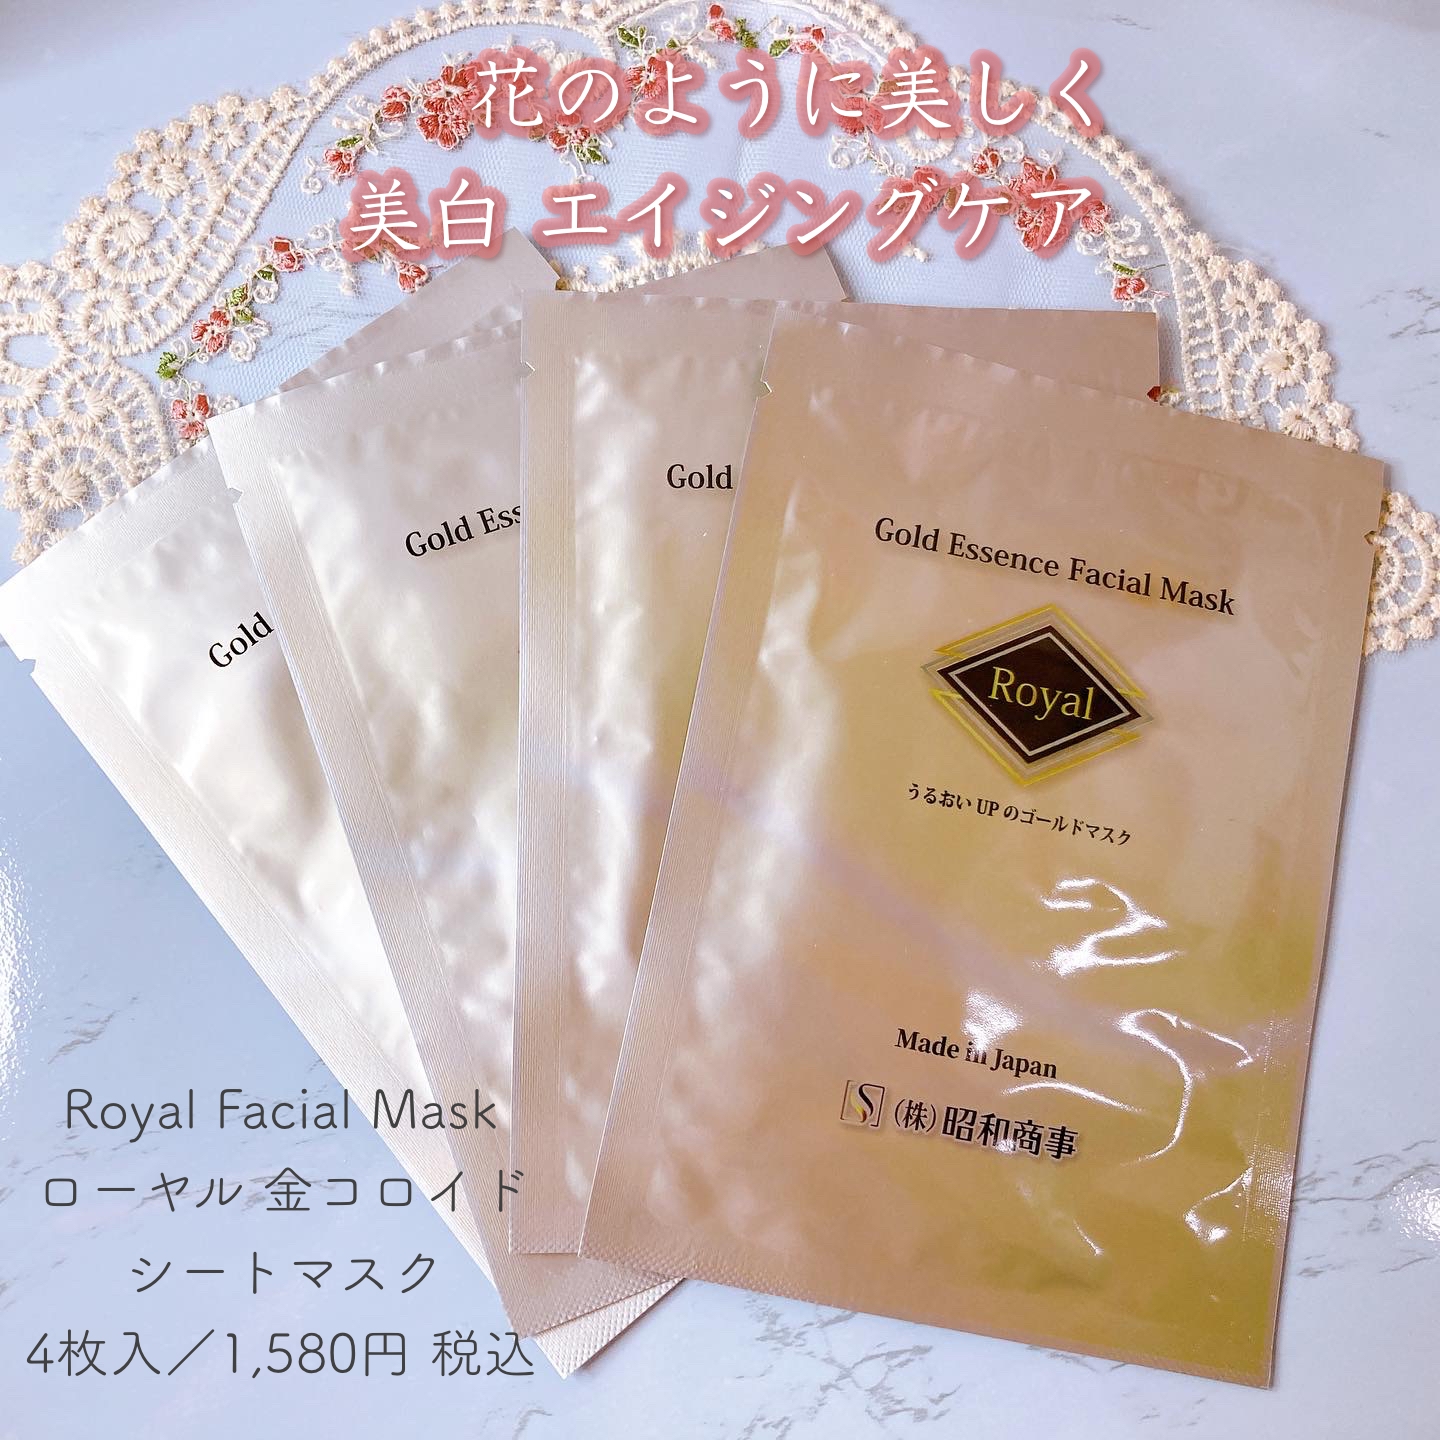 Royal Facial Mask 
ローヤル 金コロイド シートマスク
4枚入／1,580円 税込に関するメグさんの口コミ画像1